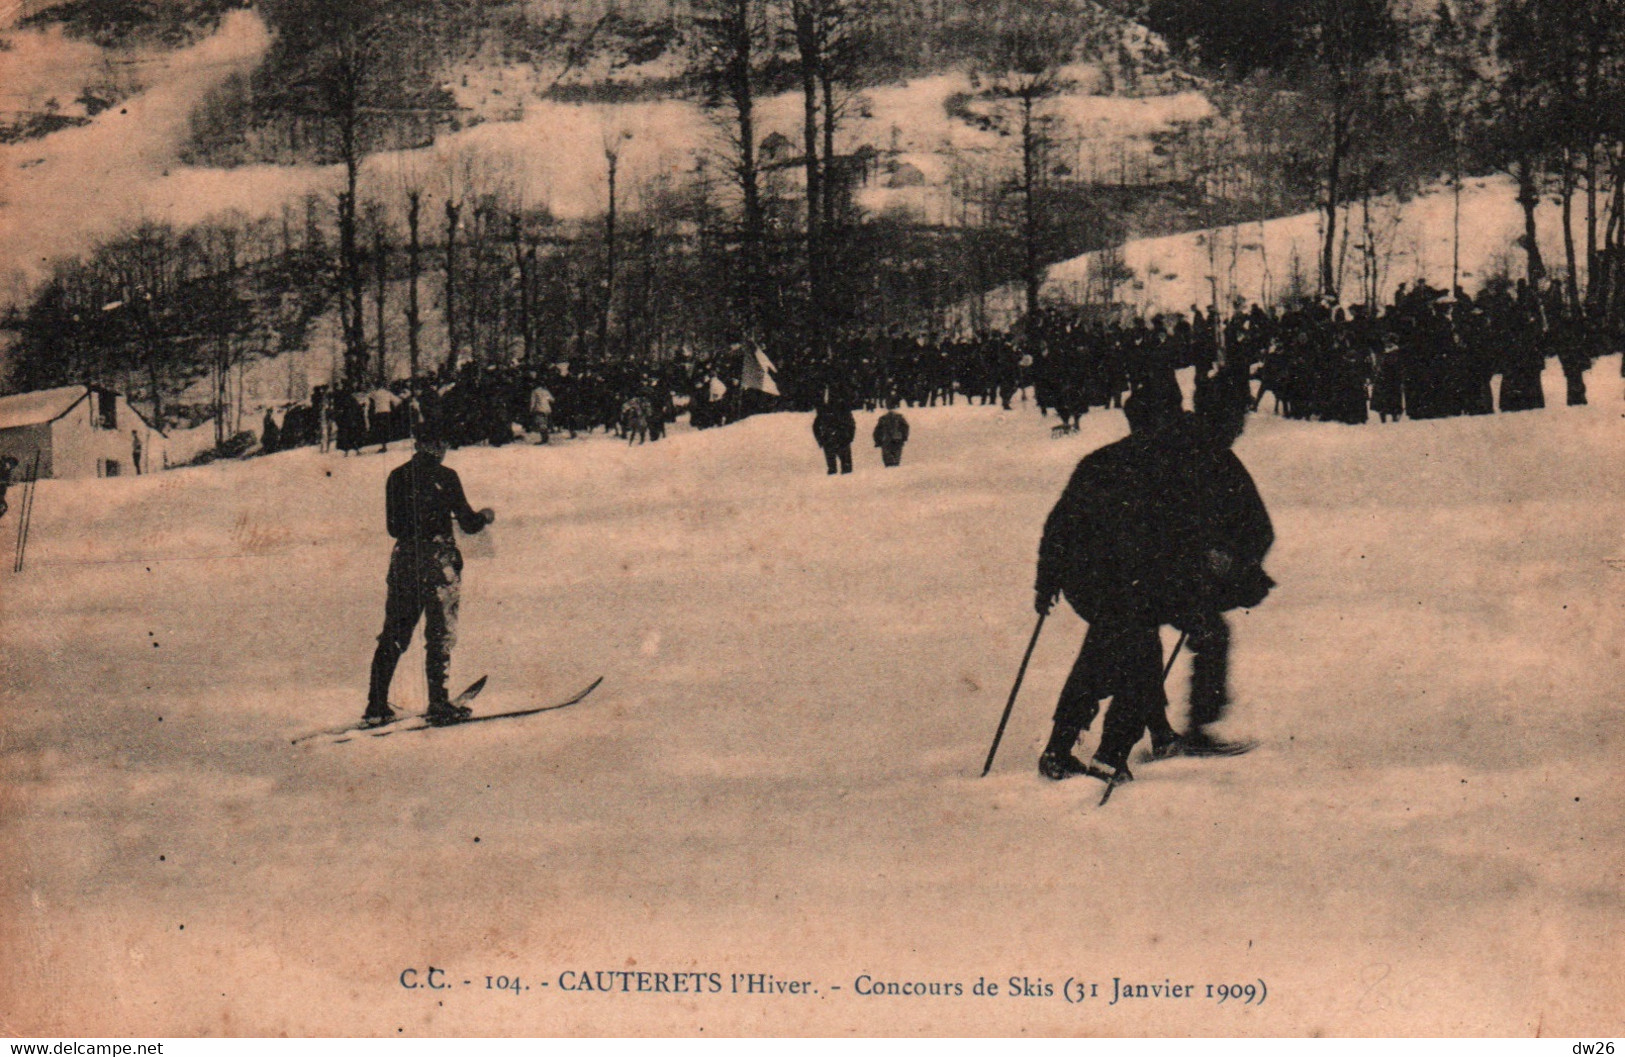 Sports D'Hiver, Ski - Cauterets L'hiver - Concours De Skis Le 31 Janvier 1909 - Carte C.C. N° 104 Non Circulée - Sports D'hiver